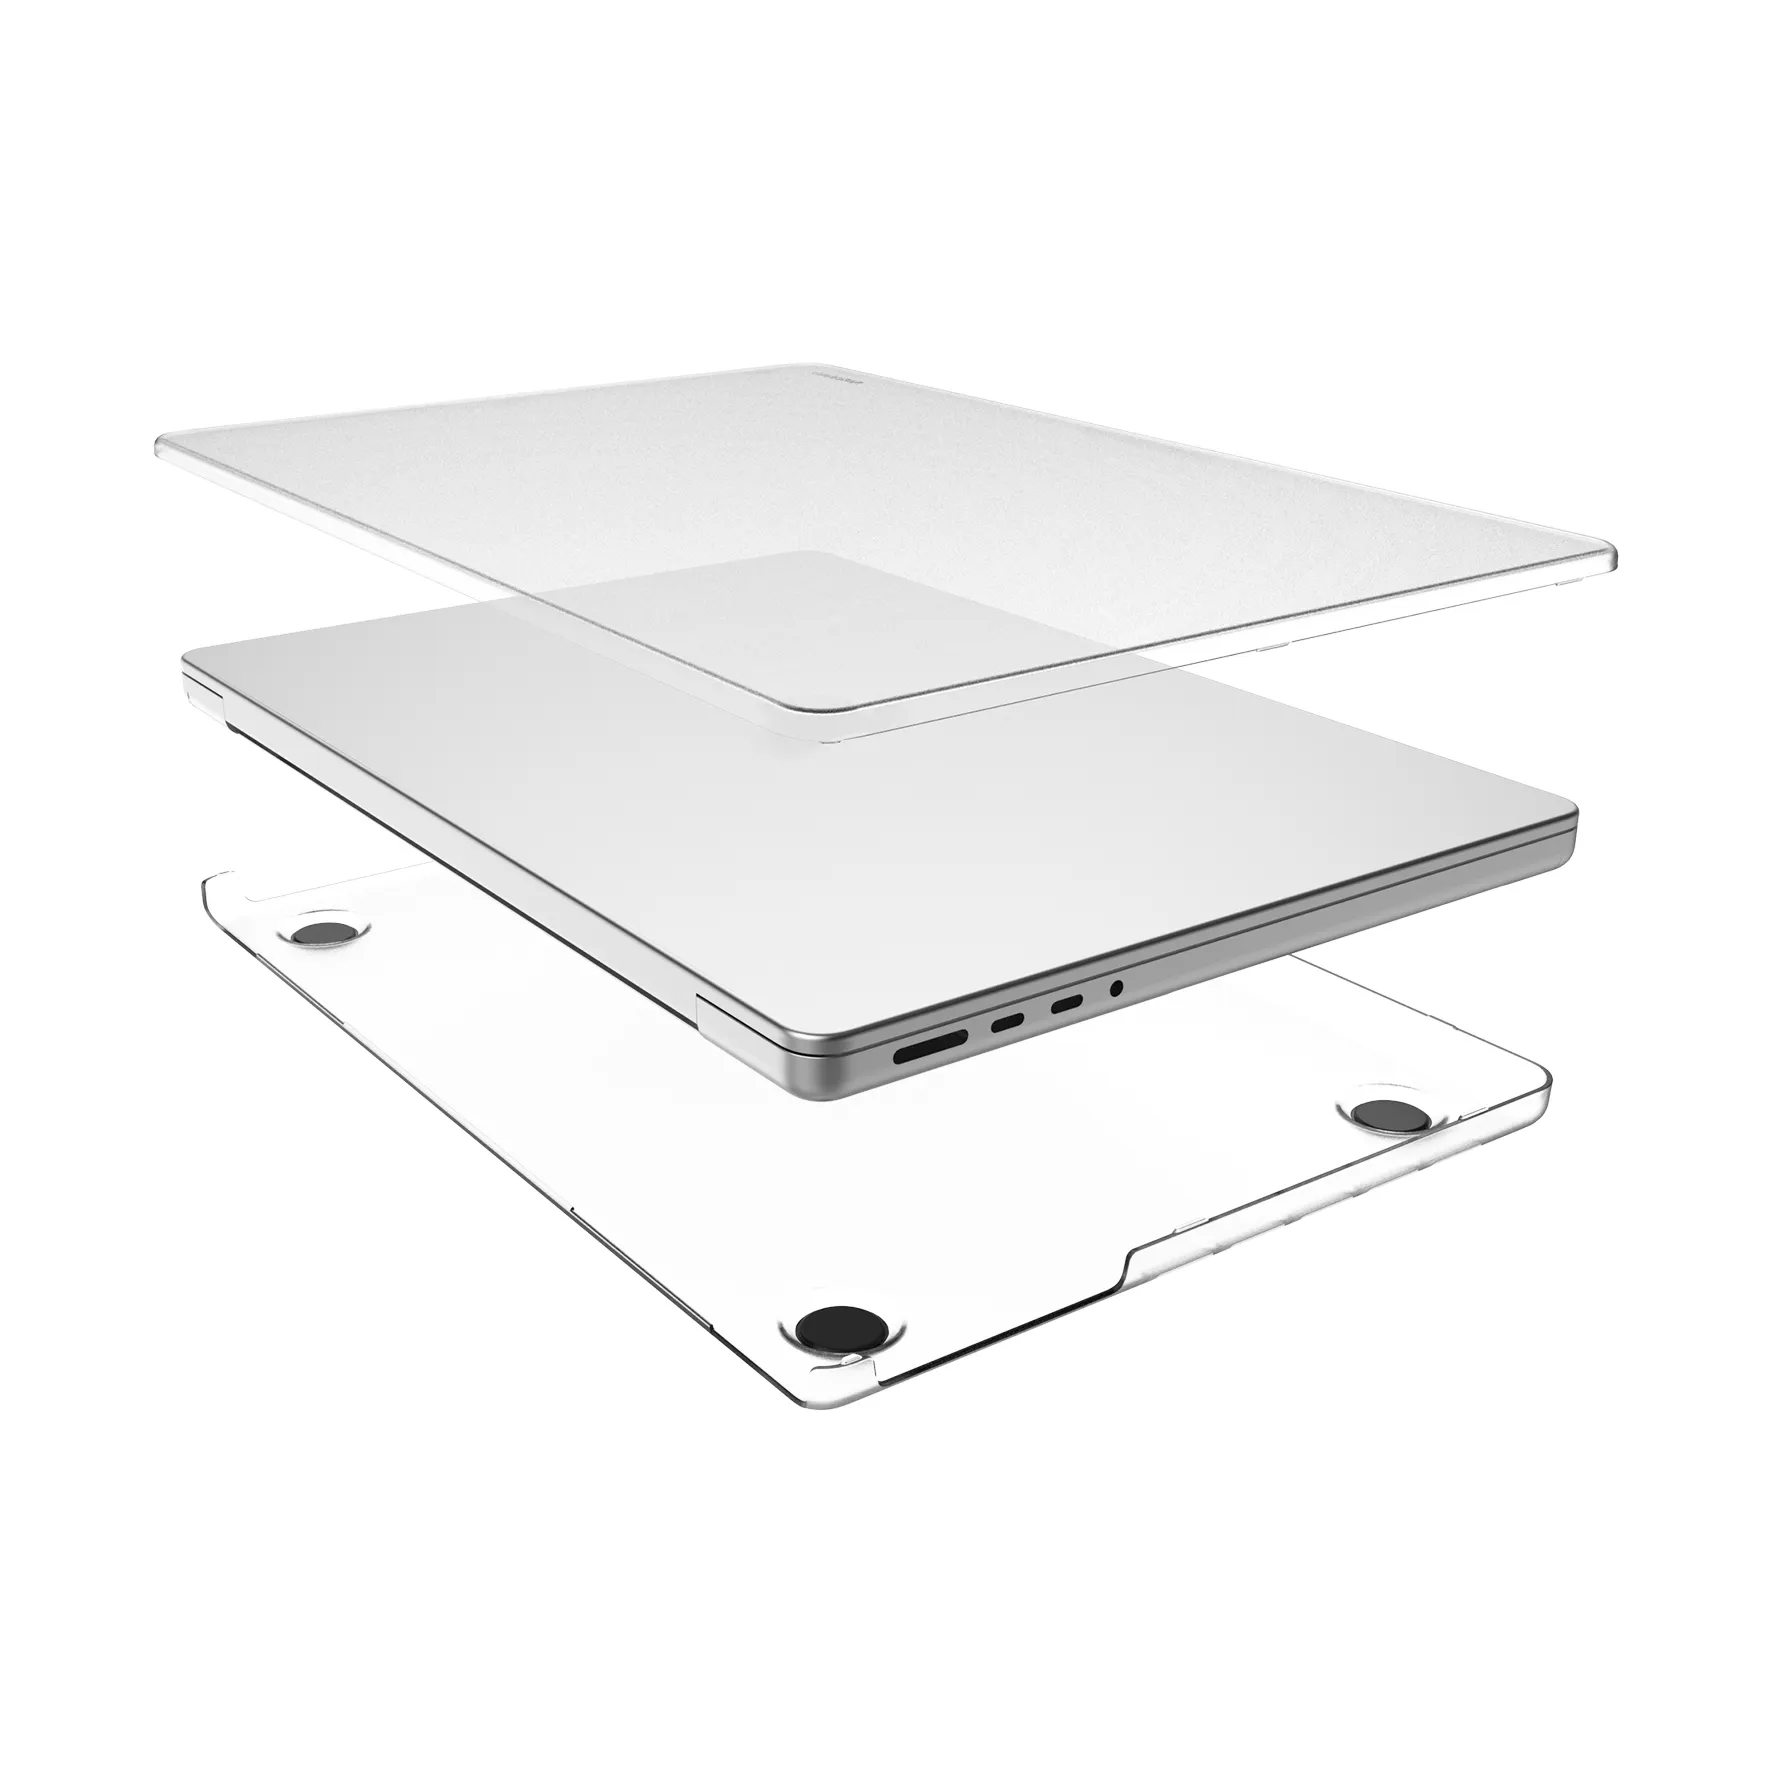 맥북 프로 용 맥북 케이스 커버 케이스 용 맥북 16 pro 14 pro 용 맞춤형 매트 PC 하드 케이스 커버